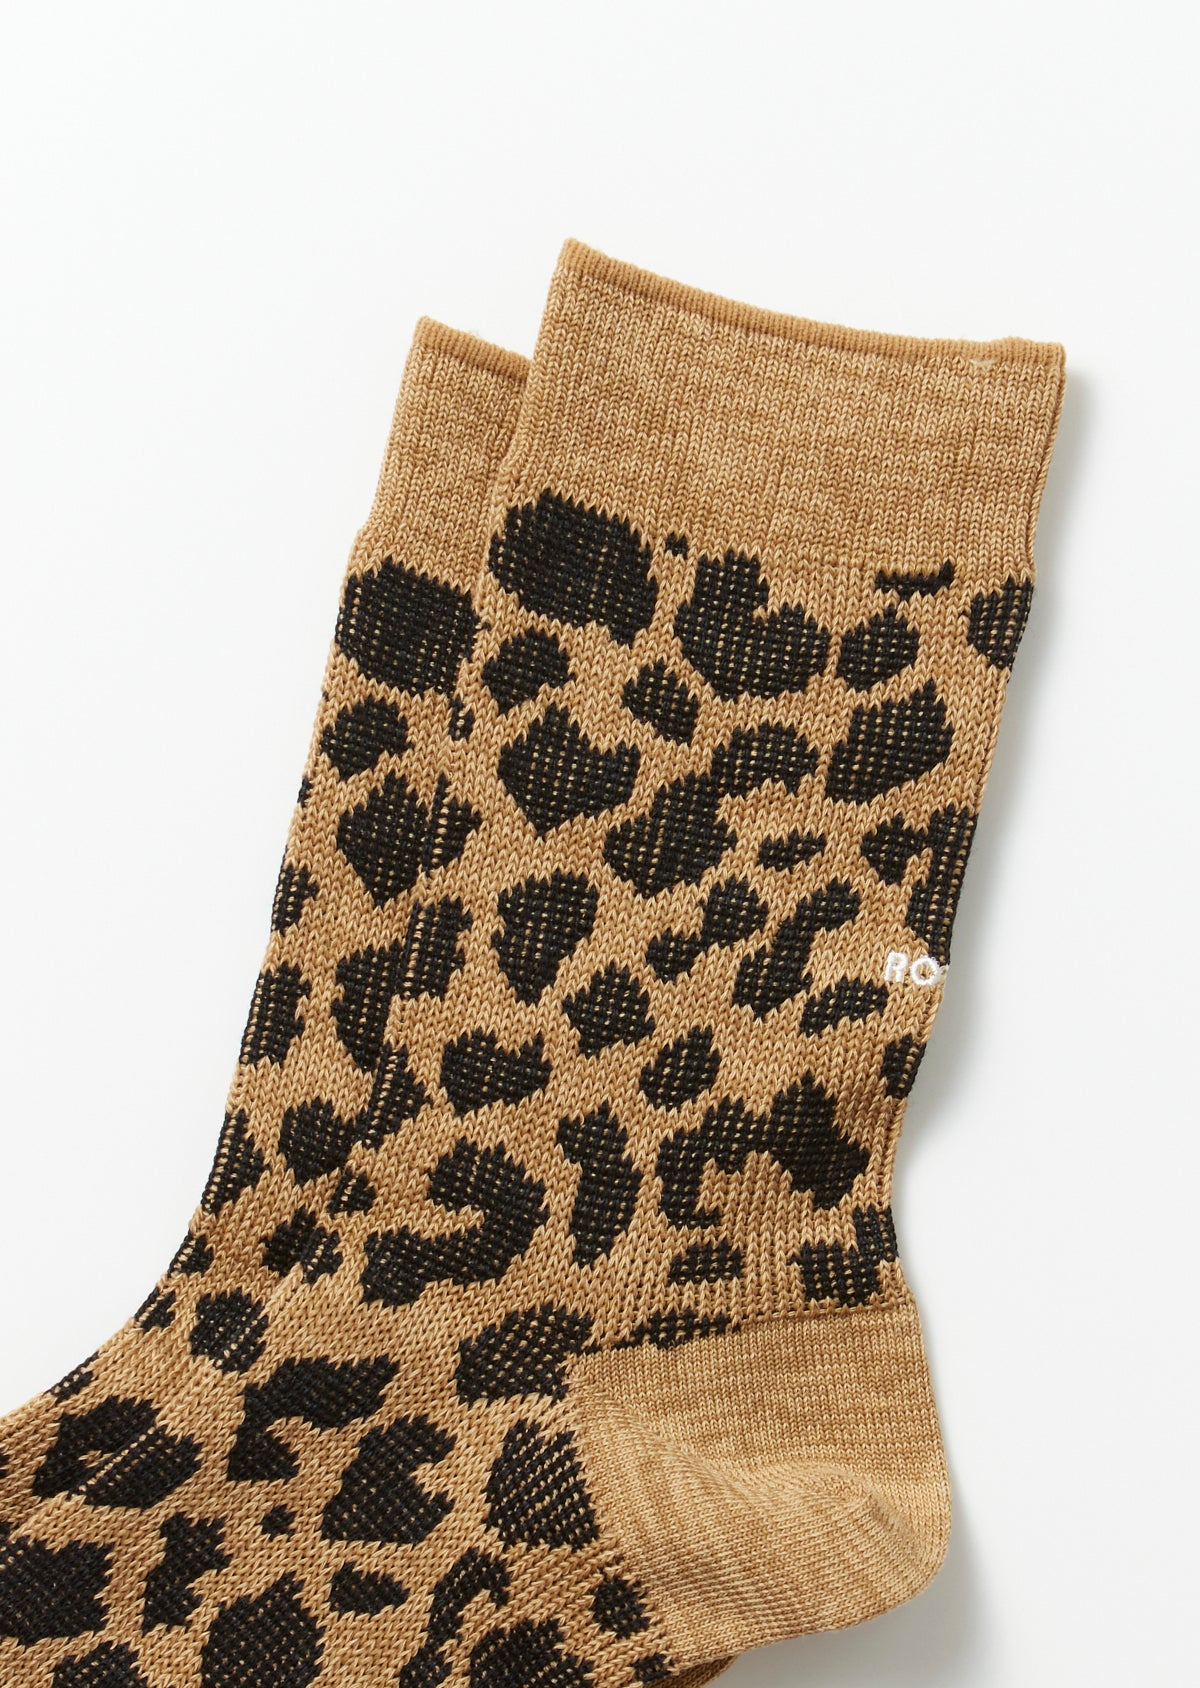 Leopard Mini Crew Socks - Beige